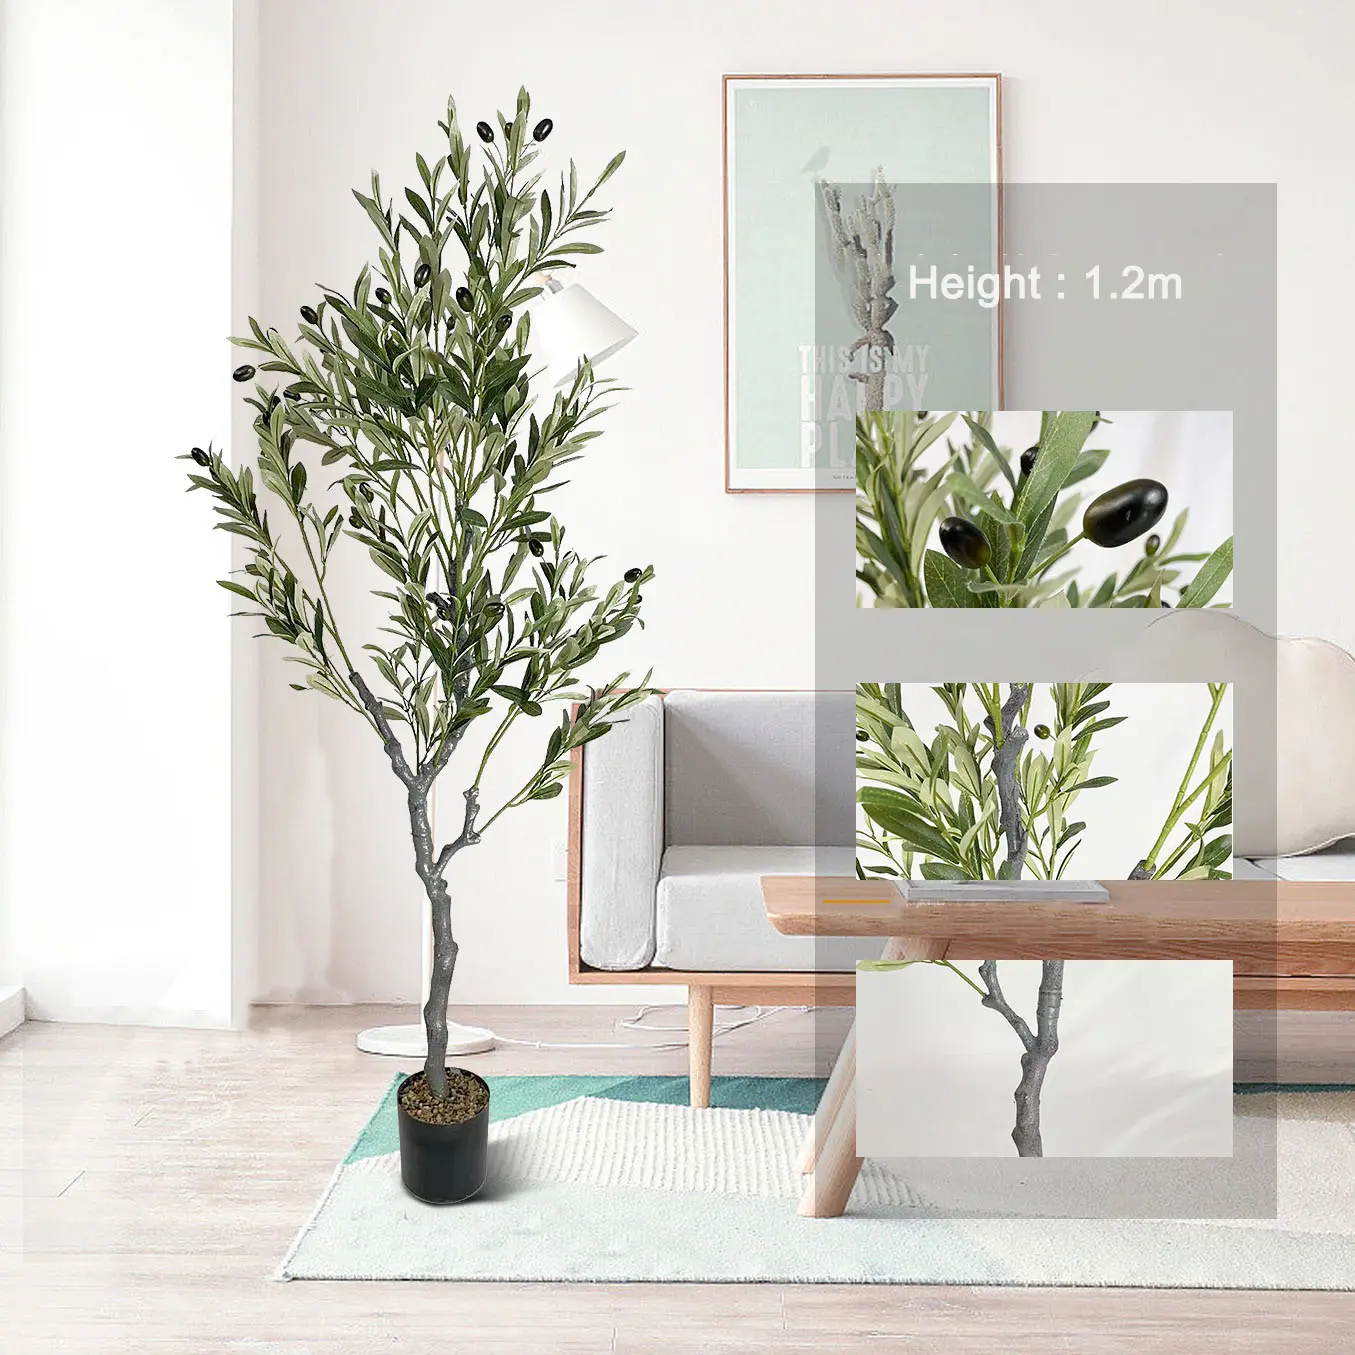 Árbol de olivo artificial para interior y exterior, planta en maceta para el hogar, oficina, sala de estar, decoración